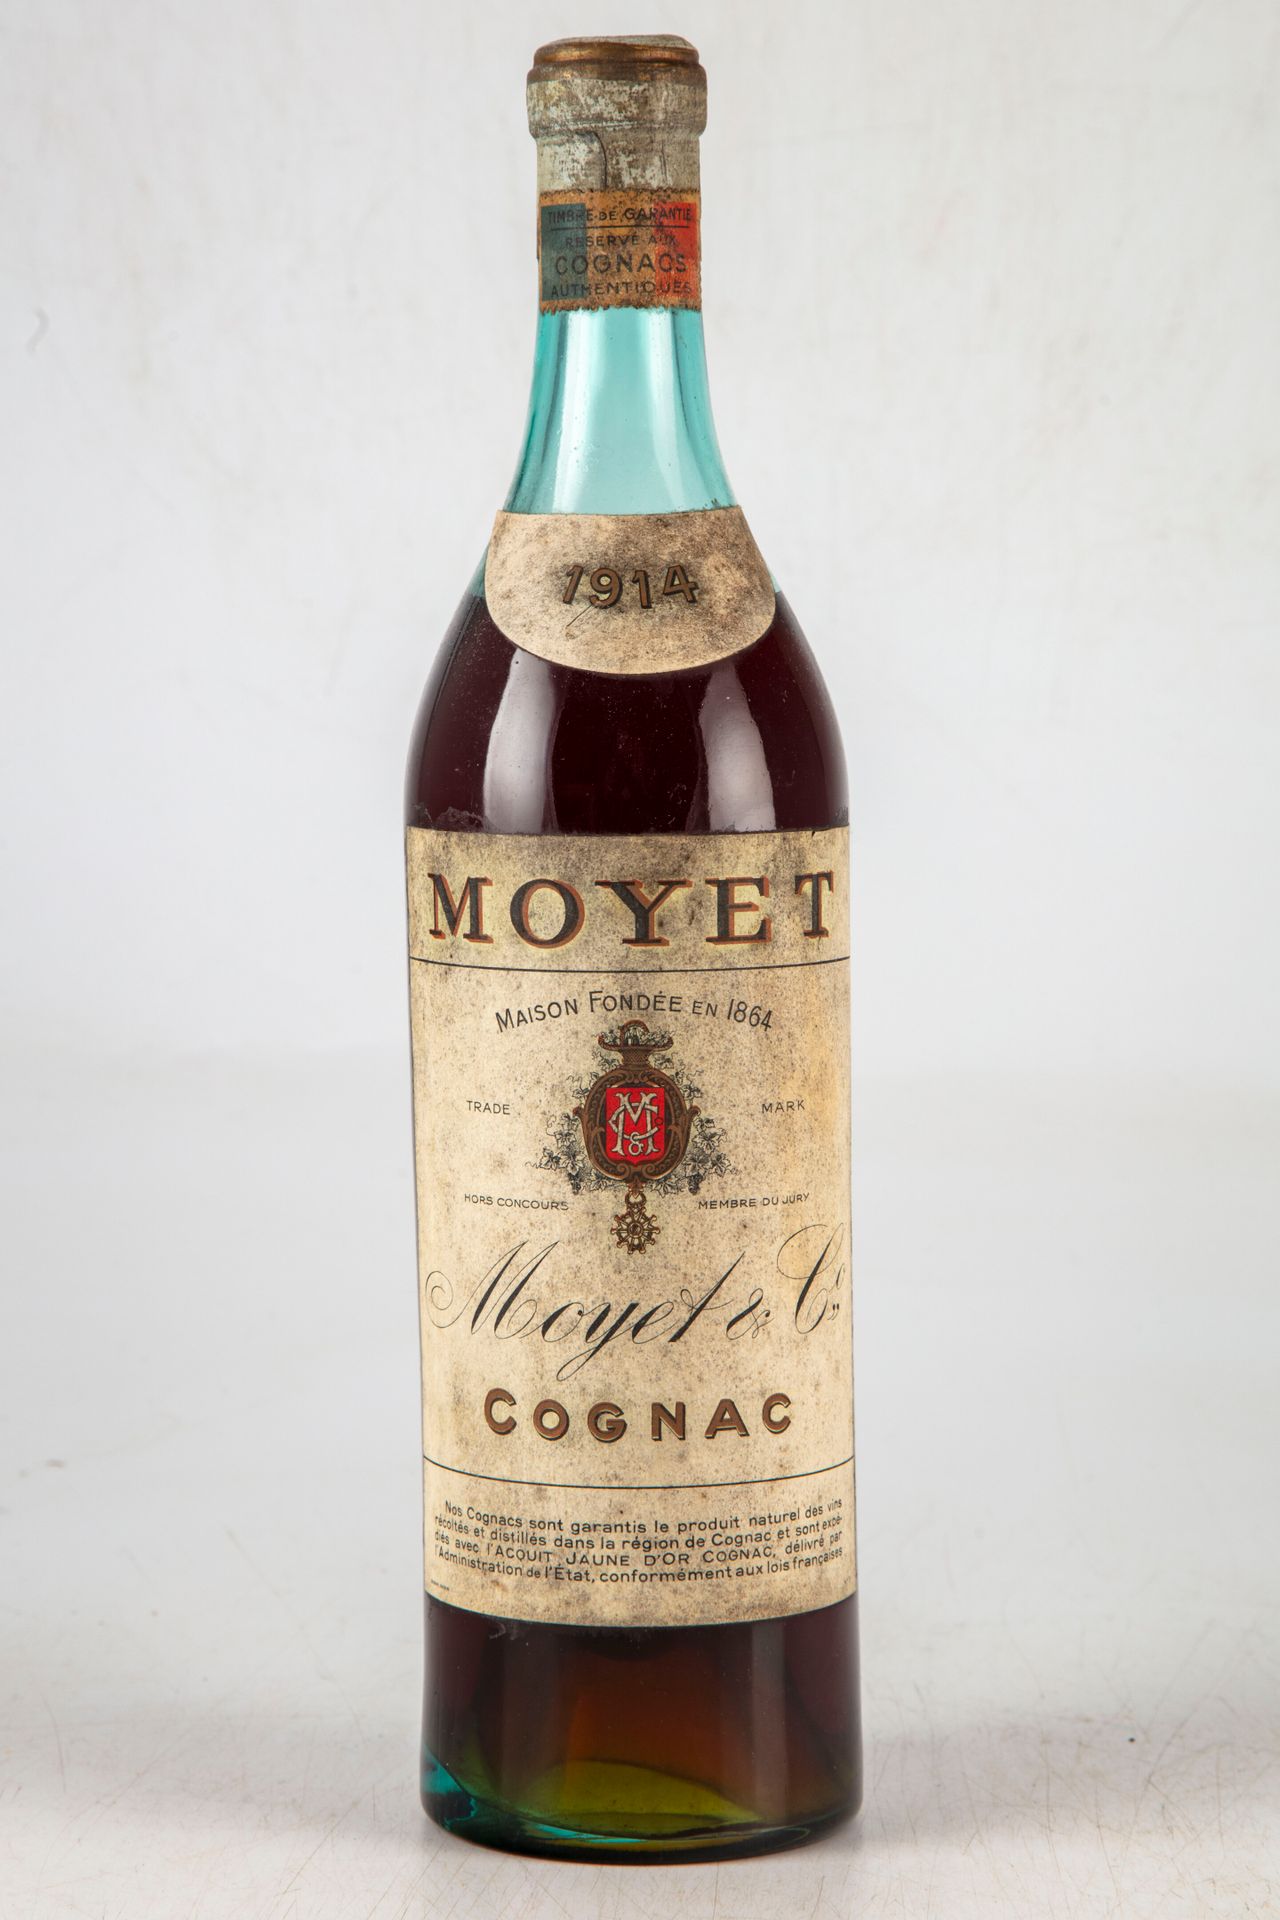 1 bottle of COGNAC Moyet 1914 Level 5 cm | Drouot.com